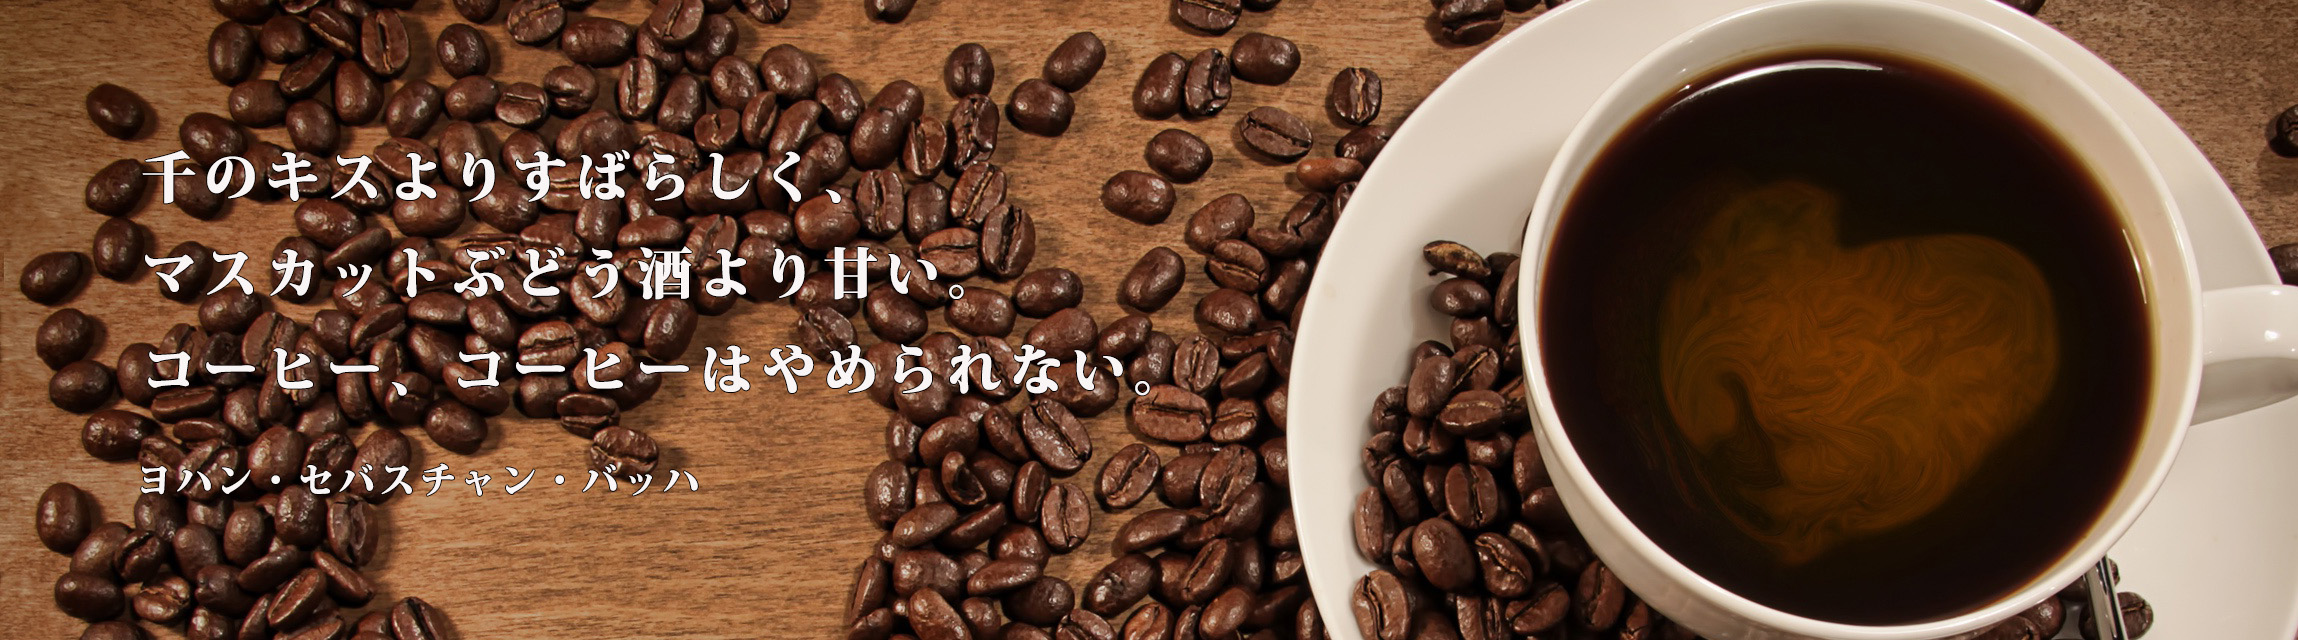 コーヒーショップボックス カフェ・コーヒー豆販売店情報サイト